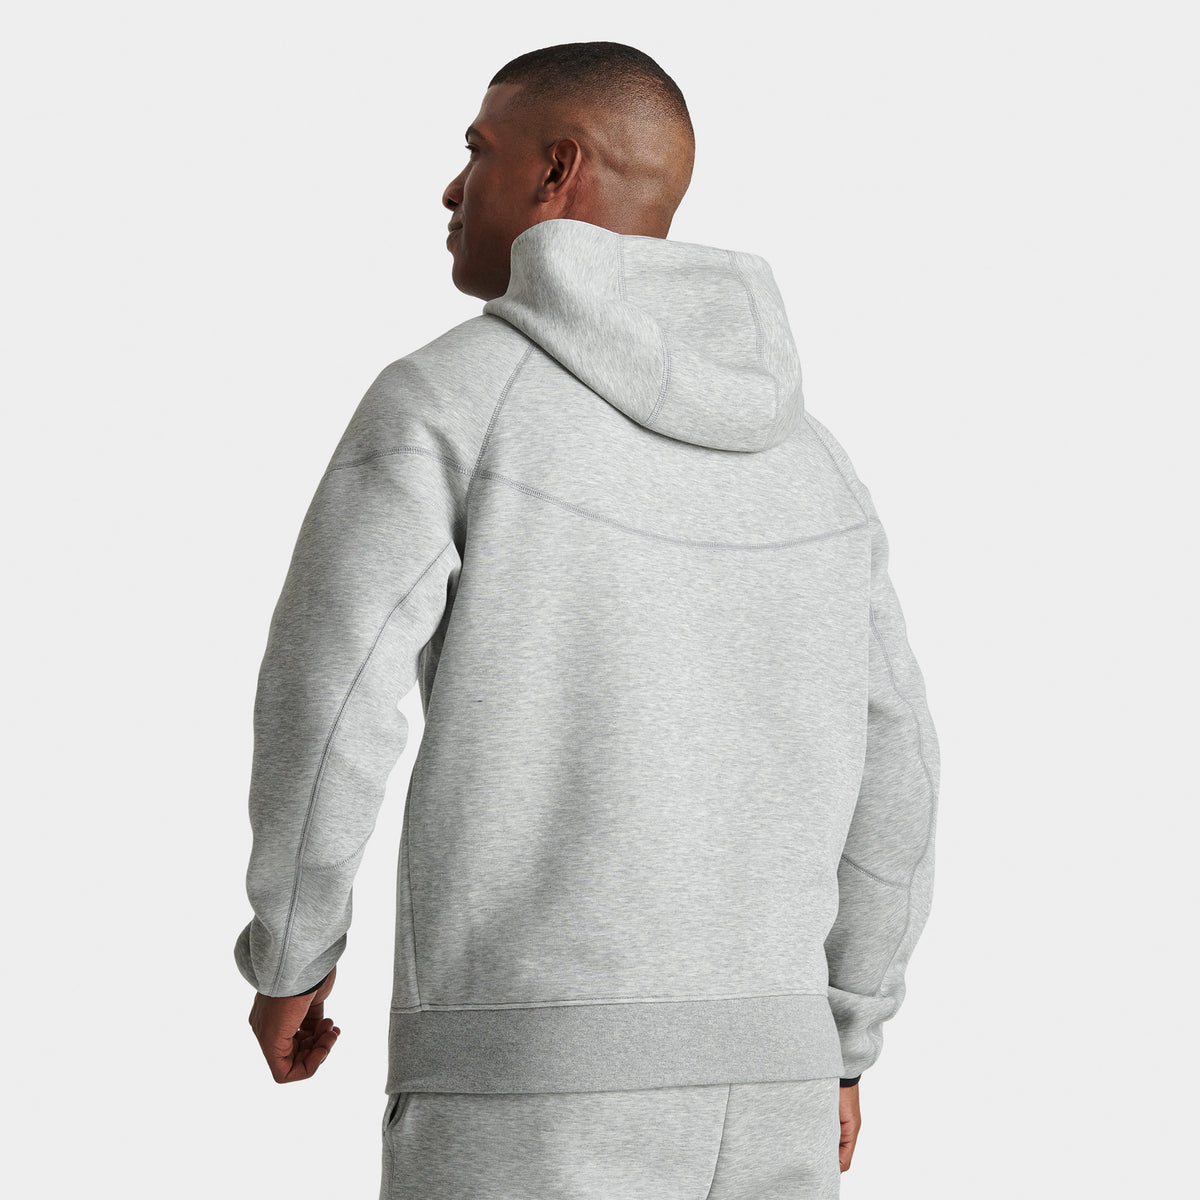 Nike Sportswear Tech Fleece Men's Full-Zip Hoodie - Dark Gray Heather/Black,  XL for sale online